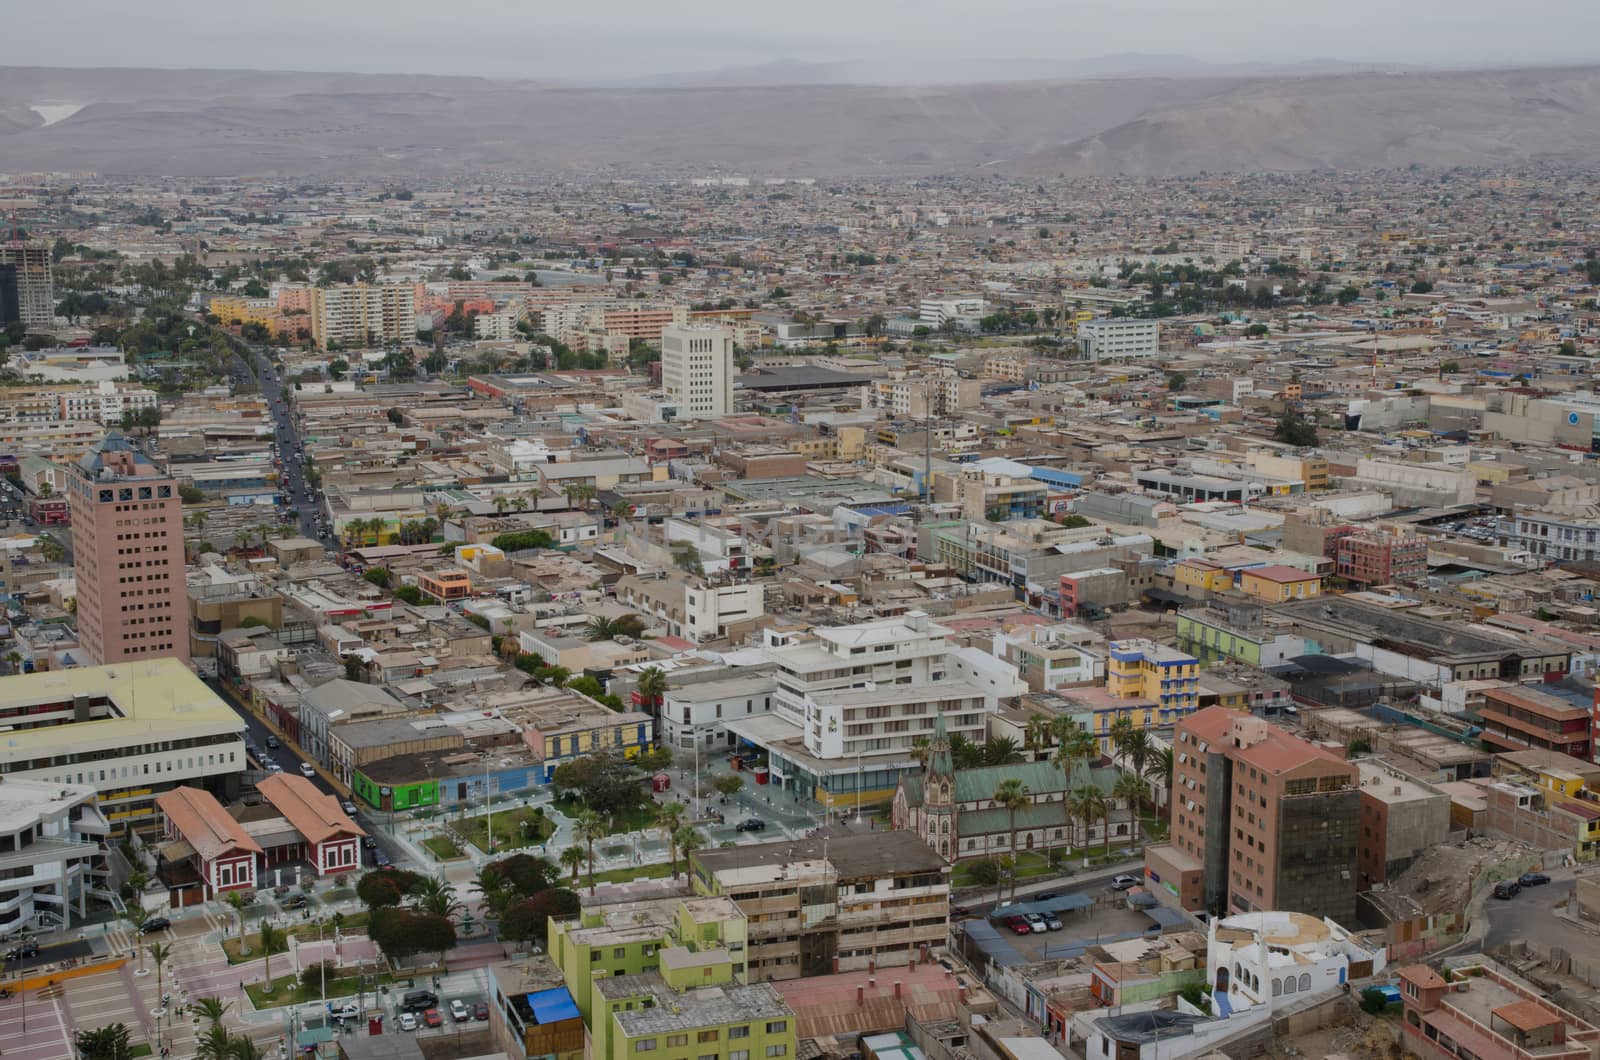 City of Arica in the Arica y Parinacota Region. Chile.